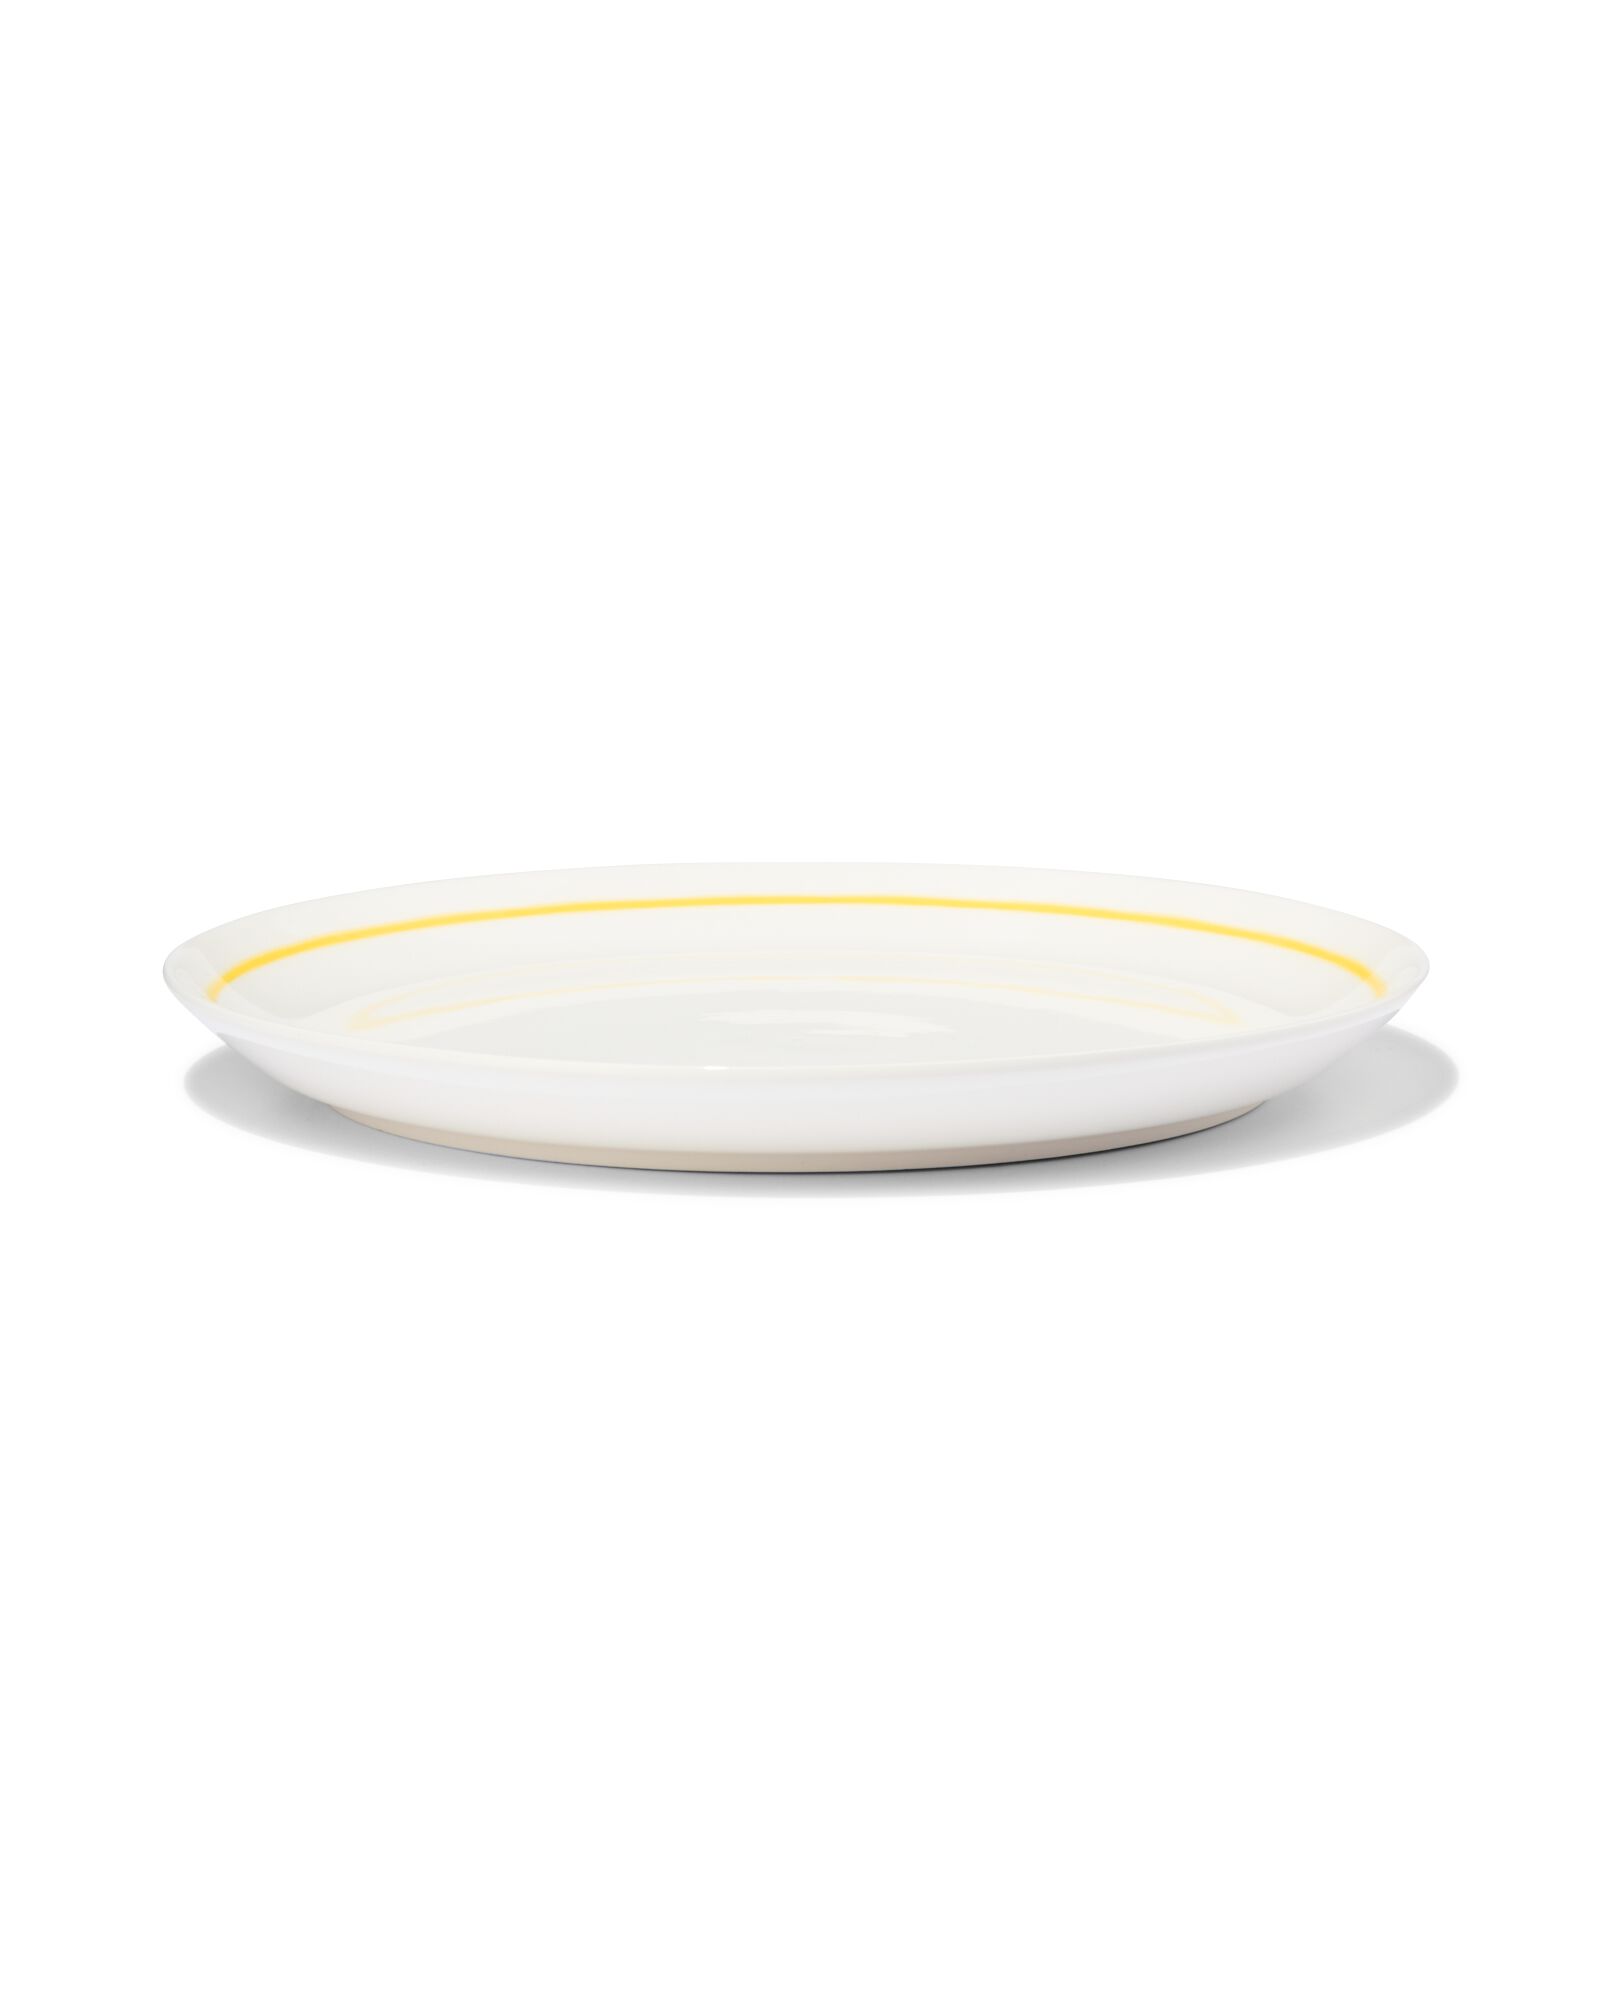 hema petite assiette ø21cm - new bone blanc et jaune - vaisselle dépareillée (white)